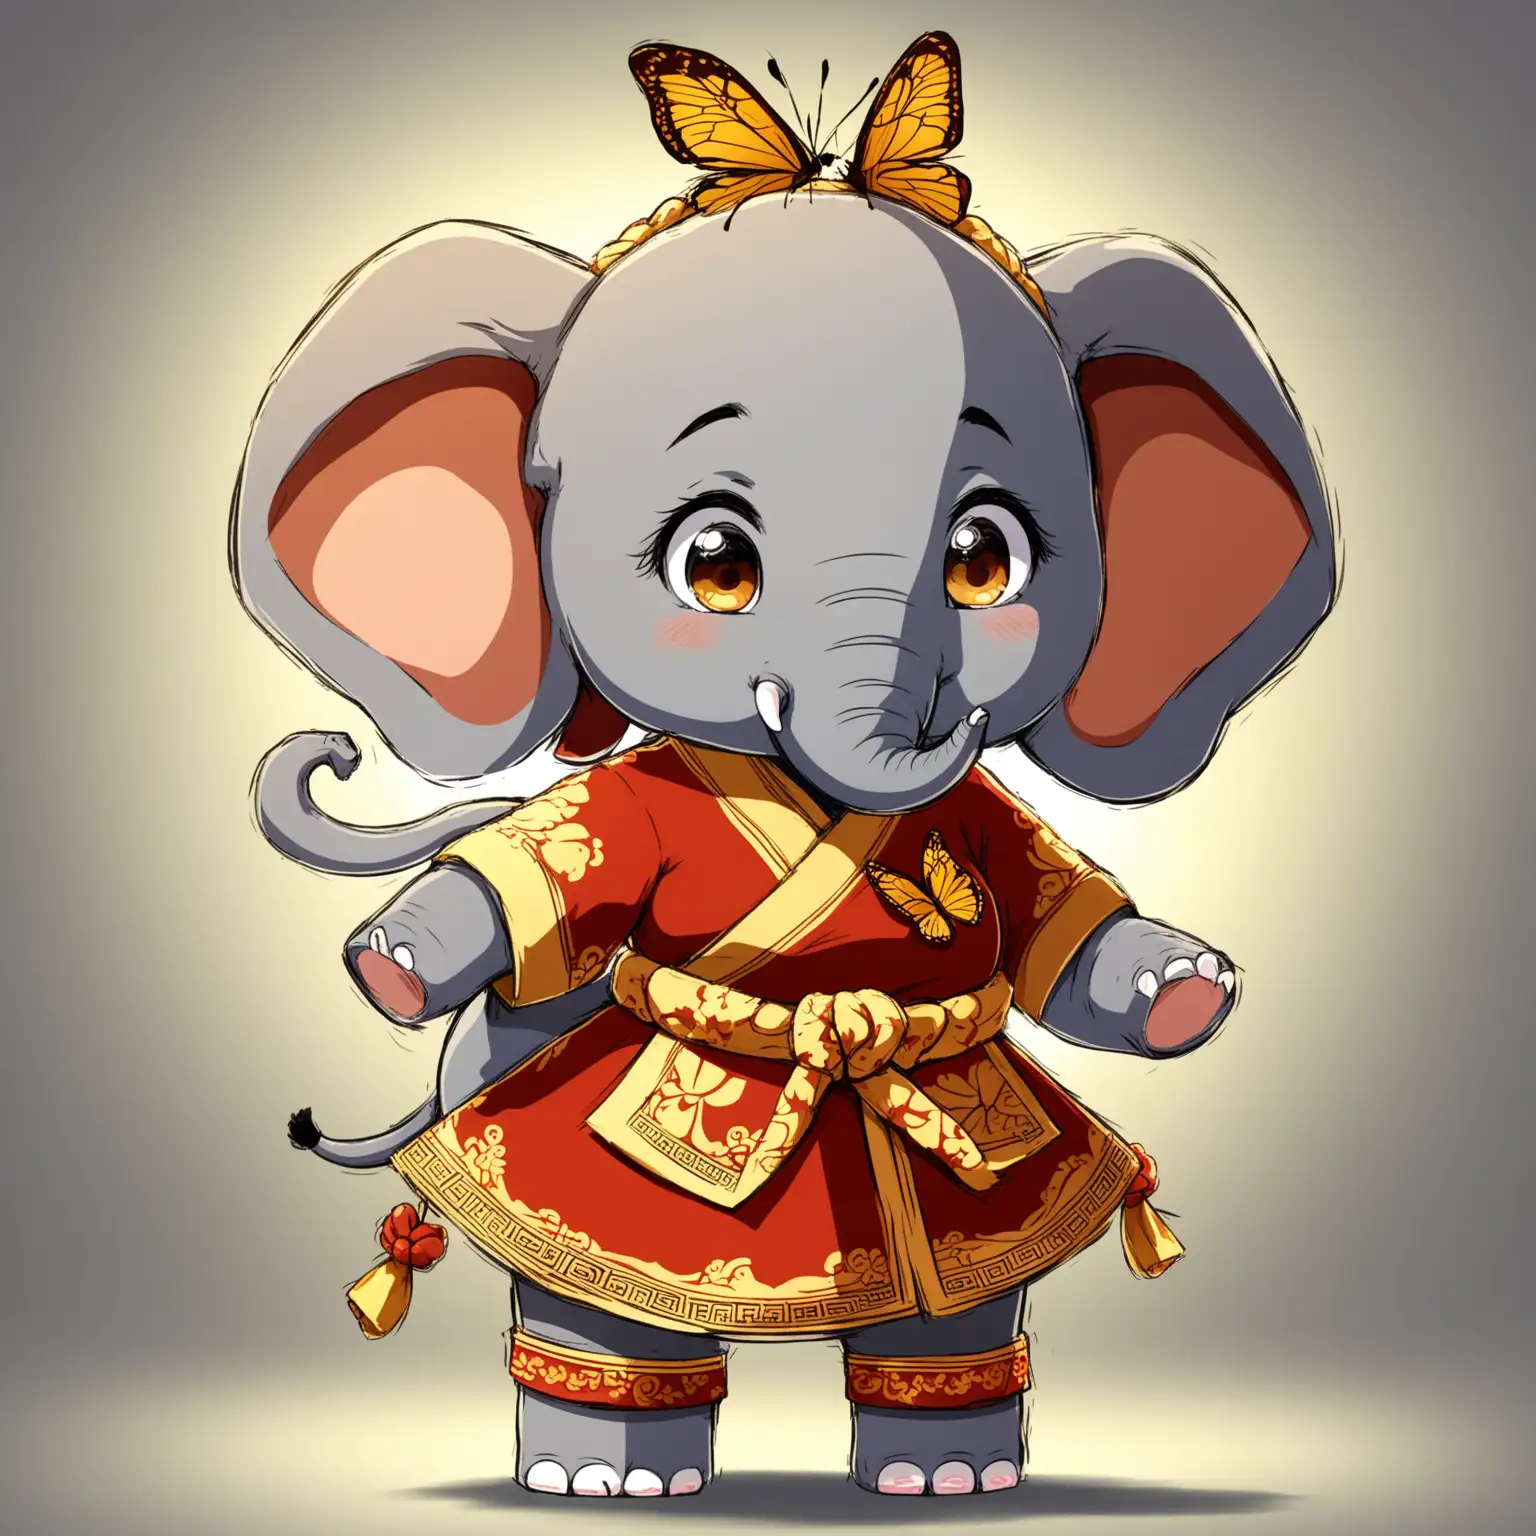 大笨酱，是一个动画人物，是女孩子，是大象，她很大只，但是很可爱，外表粗旷内心细腻，有一个蝴蝶结